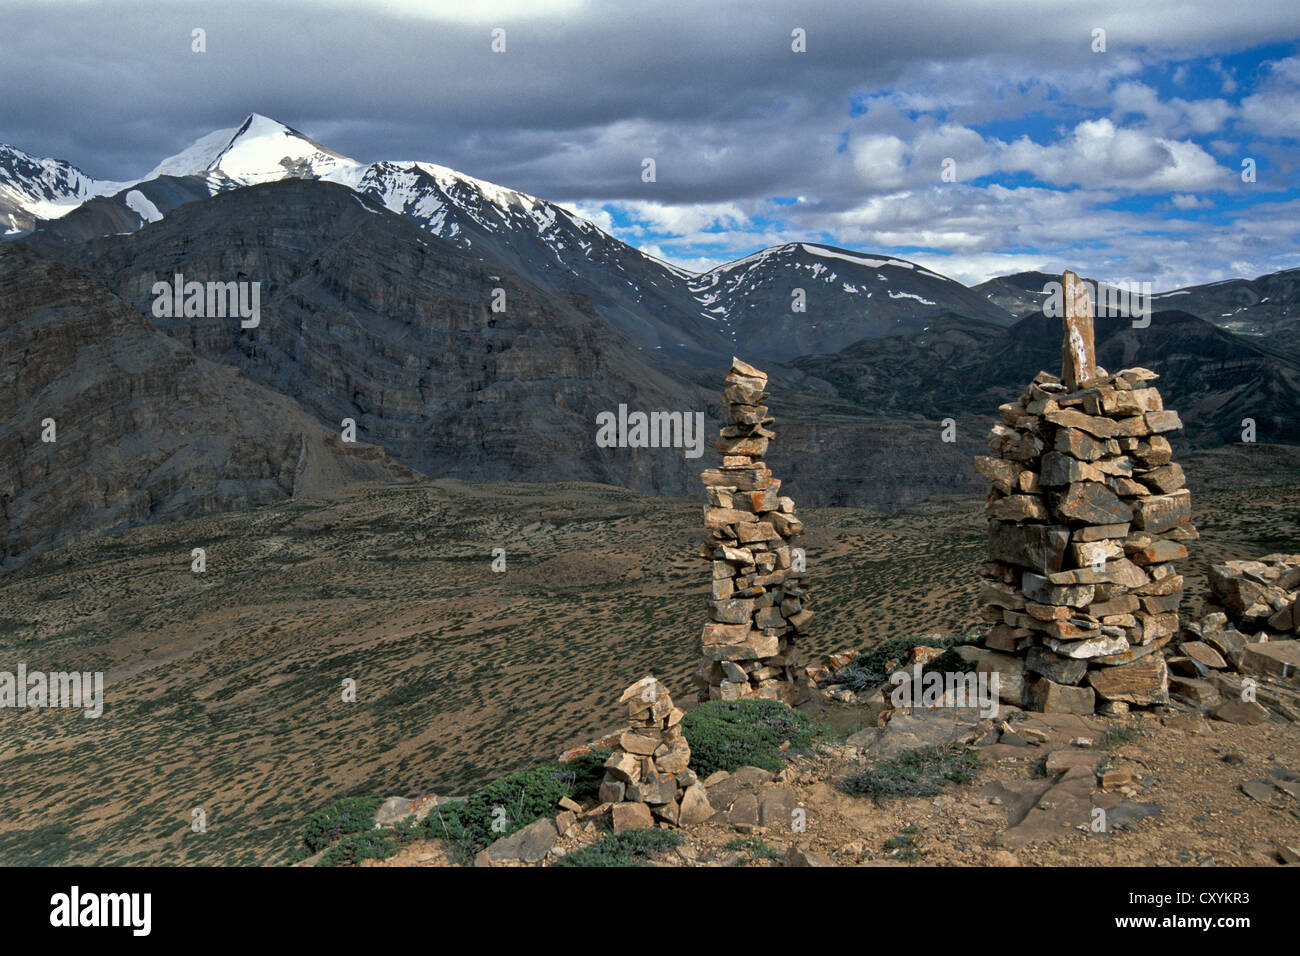 Cairn, faccia ovest del santo picco di Mt Kanamo, 5974m, Thaltak, Kibber-Karzok-Trail, Himachal Pradesh, Himalaya indiano Foto Stock